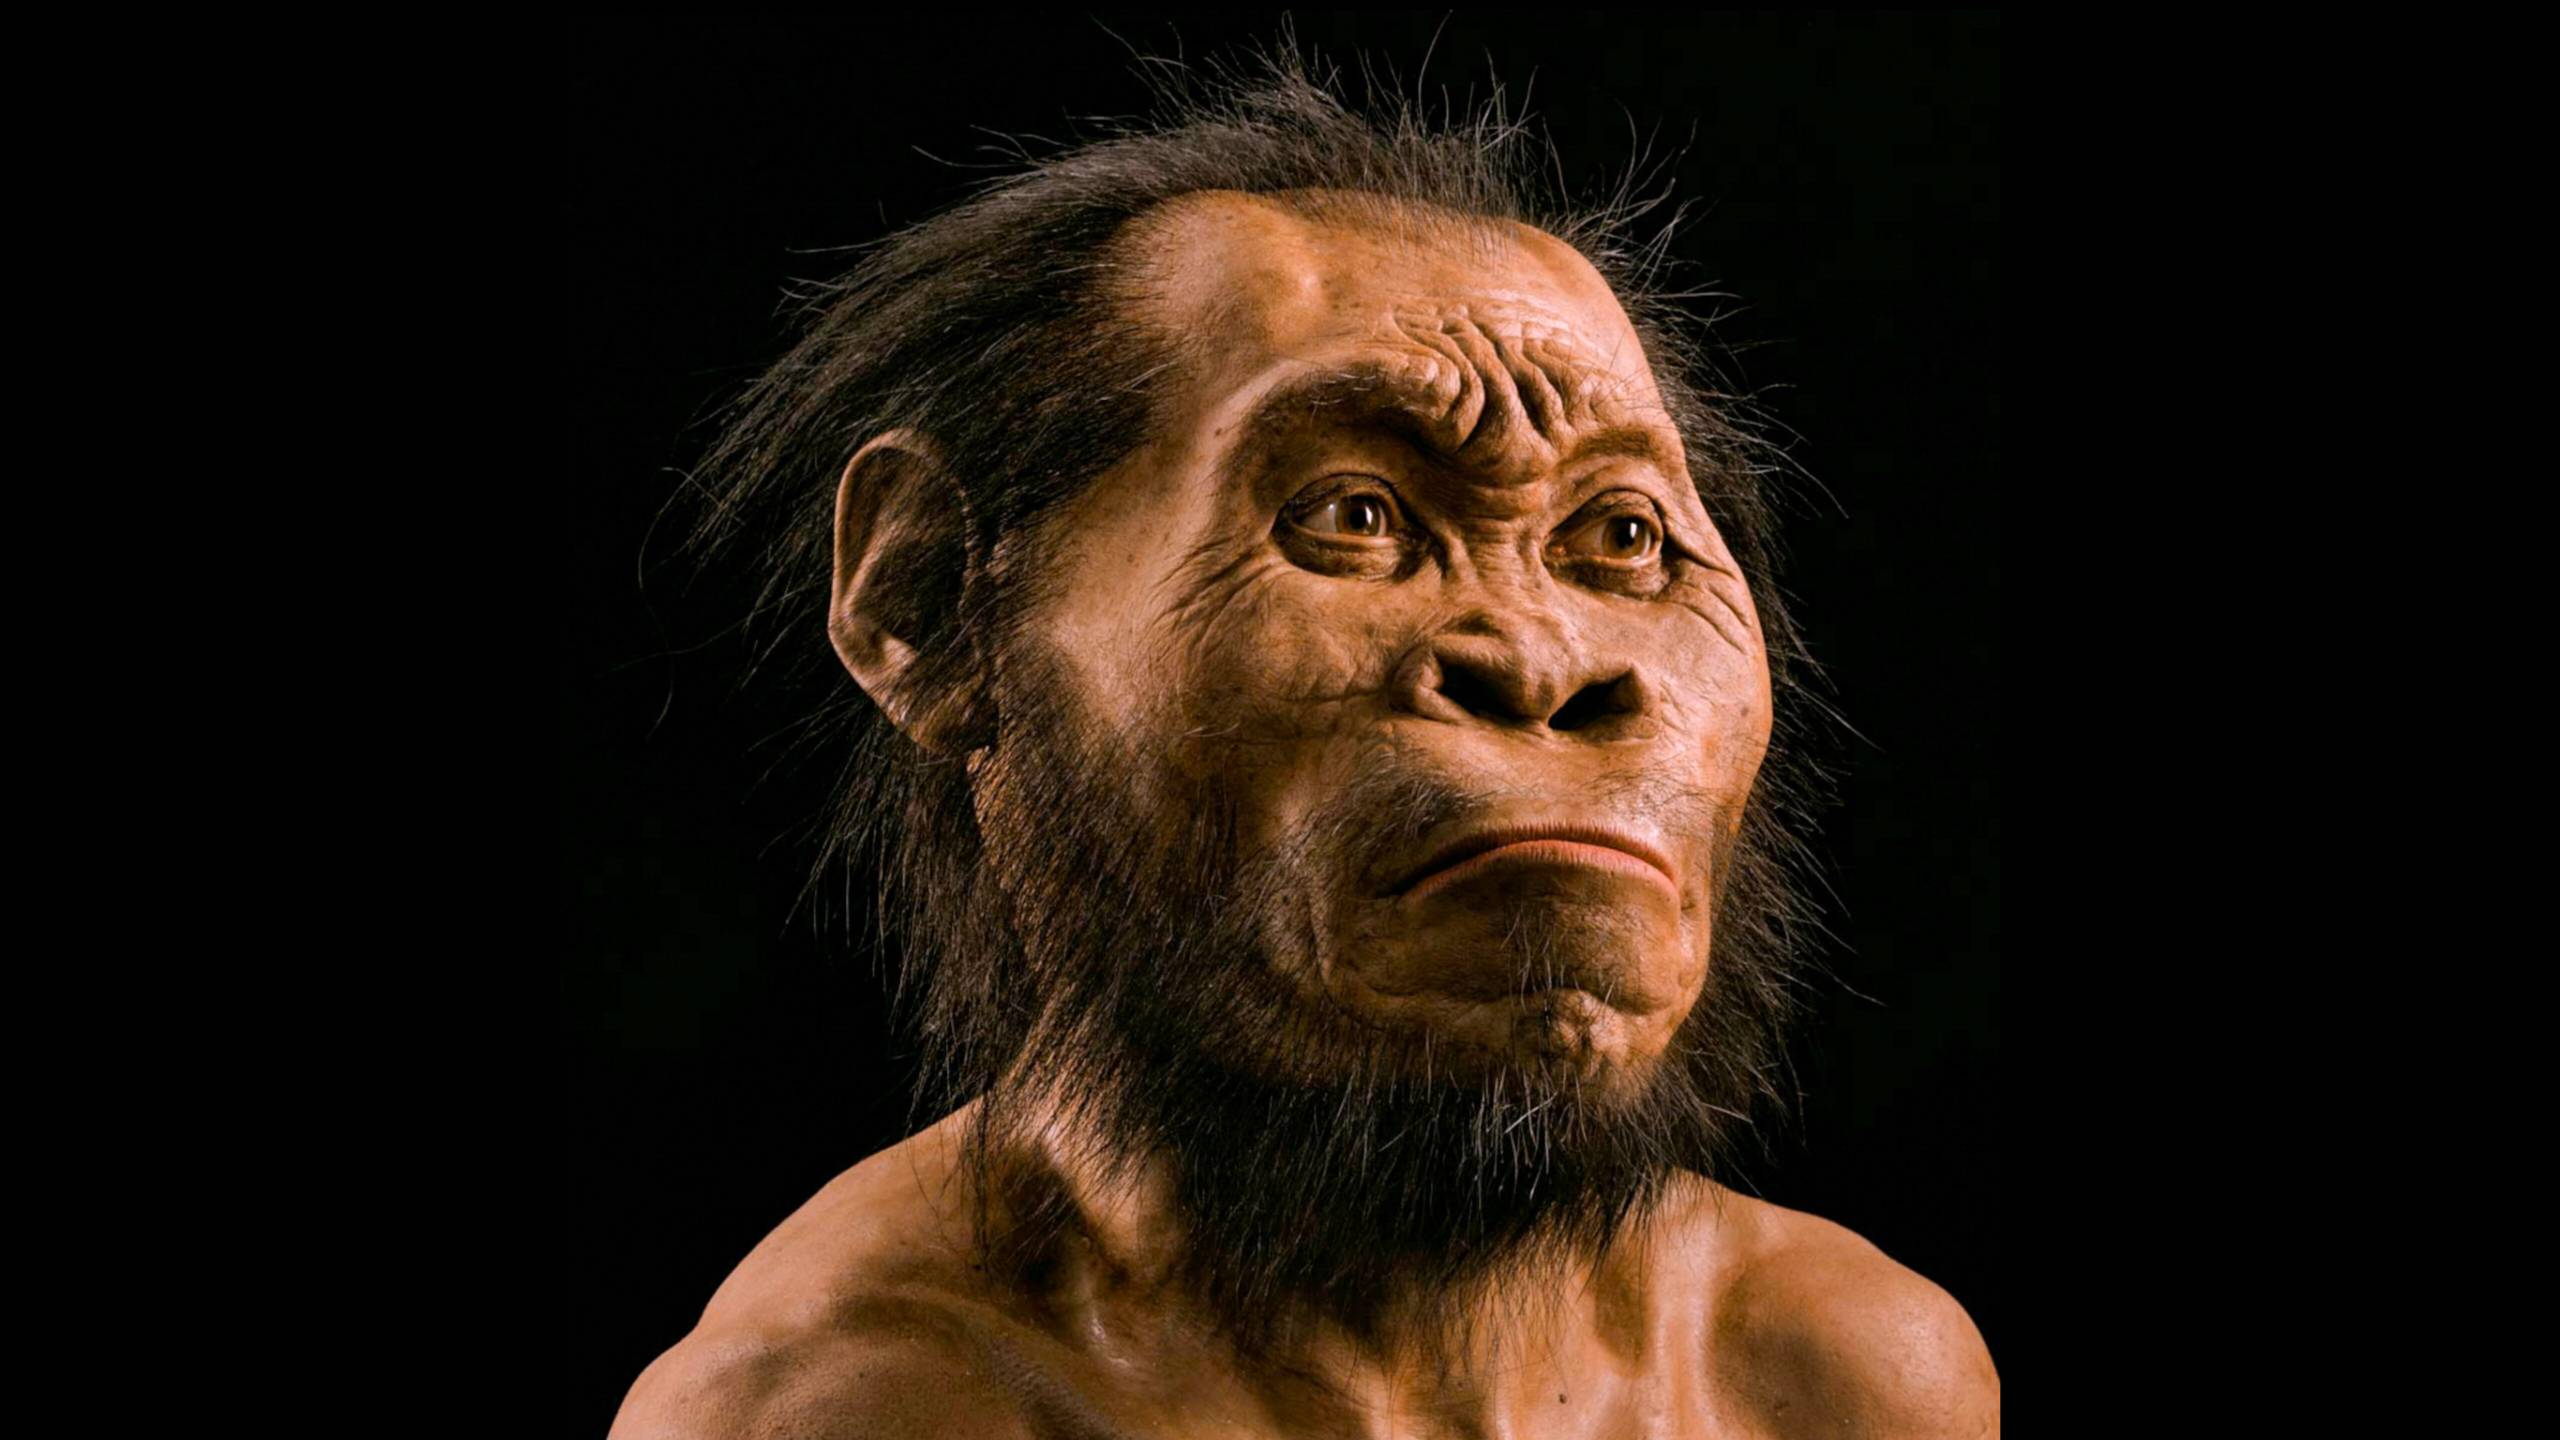 Suyak skaneridan foydalangan holda, paleoartist Jon Gurche Homo naledining boshini rekonstruksiya qilish uchun taxminan 700 soat vaqt sarfladi.